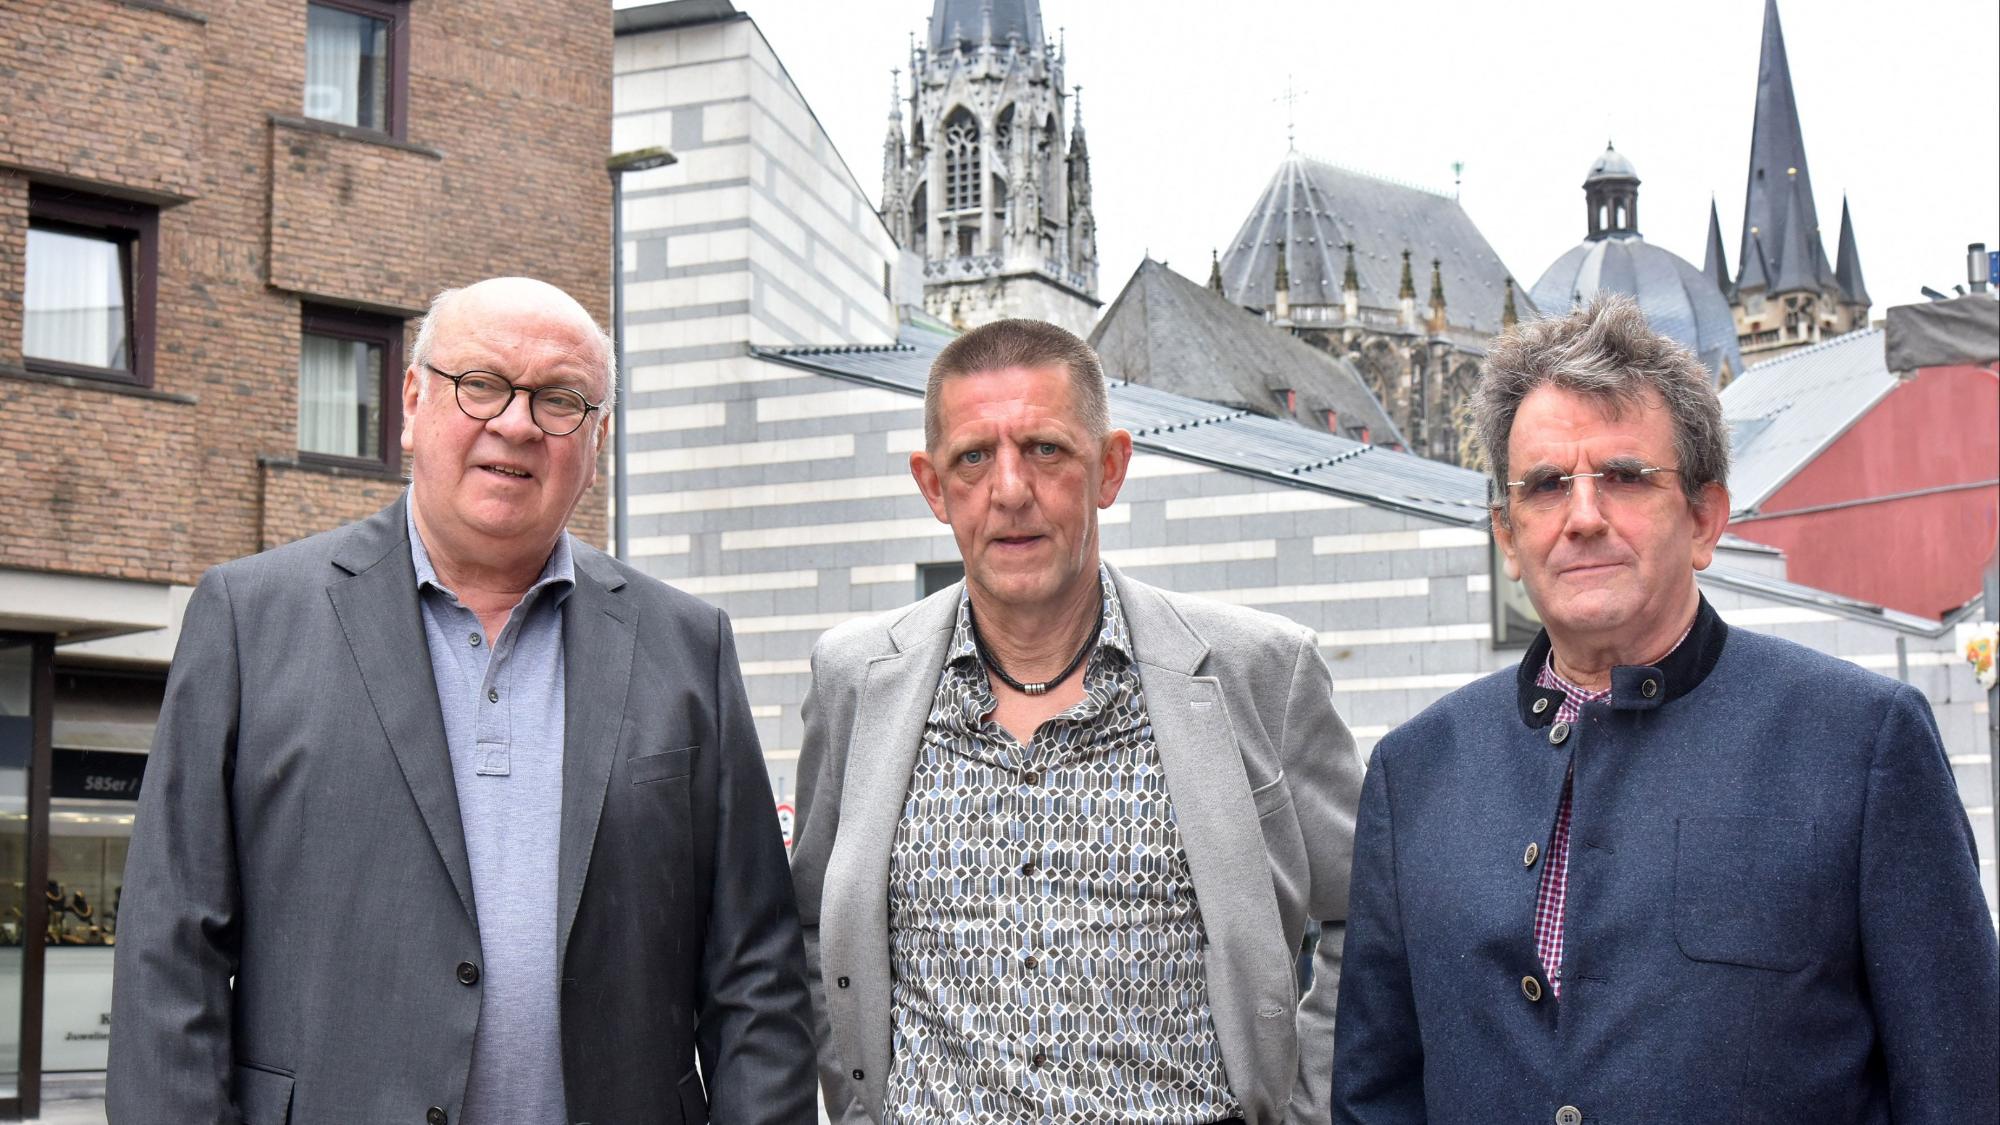 Manfred Schmitz, Thomas F und Paul Leidner (von links) sind Teil des Betroffenenrates im Bistum Aachen.